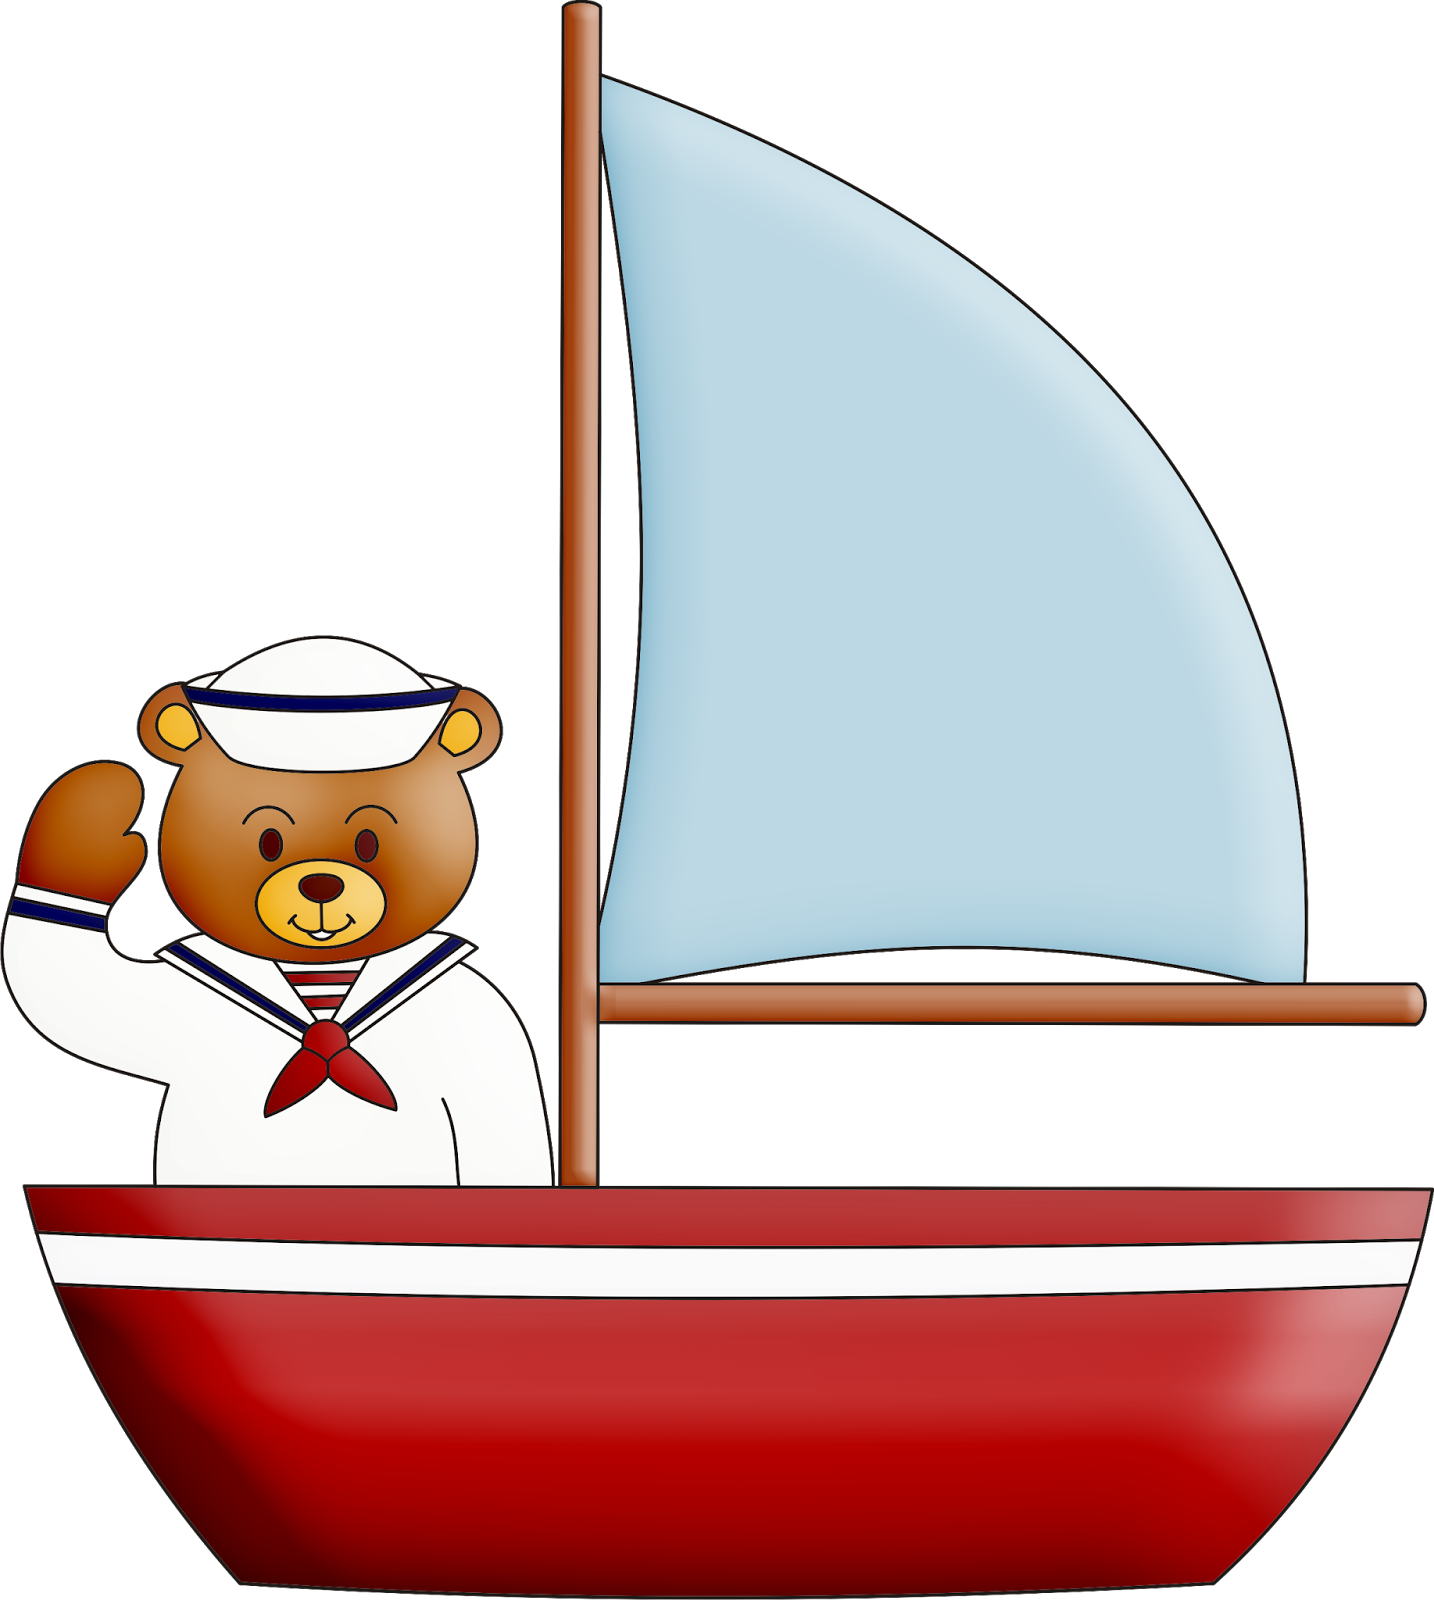 Bears - Ursinho Marinheiro No Barco (1434x1600)